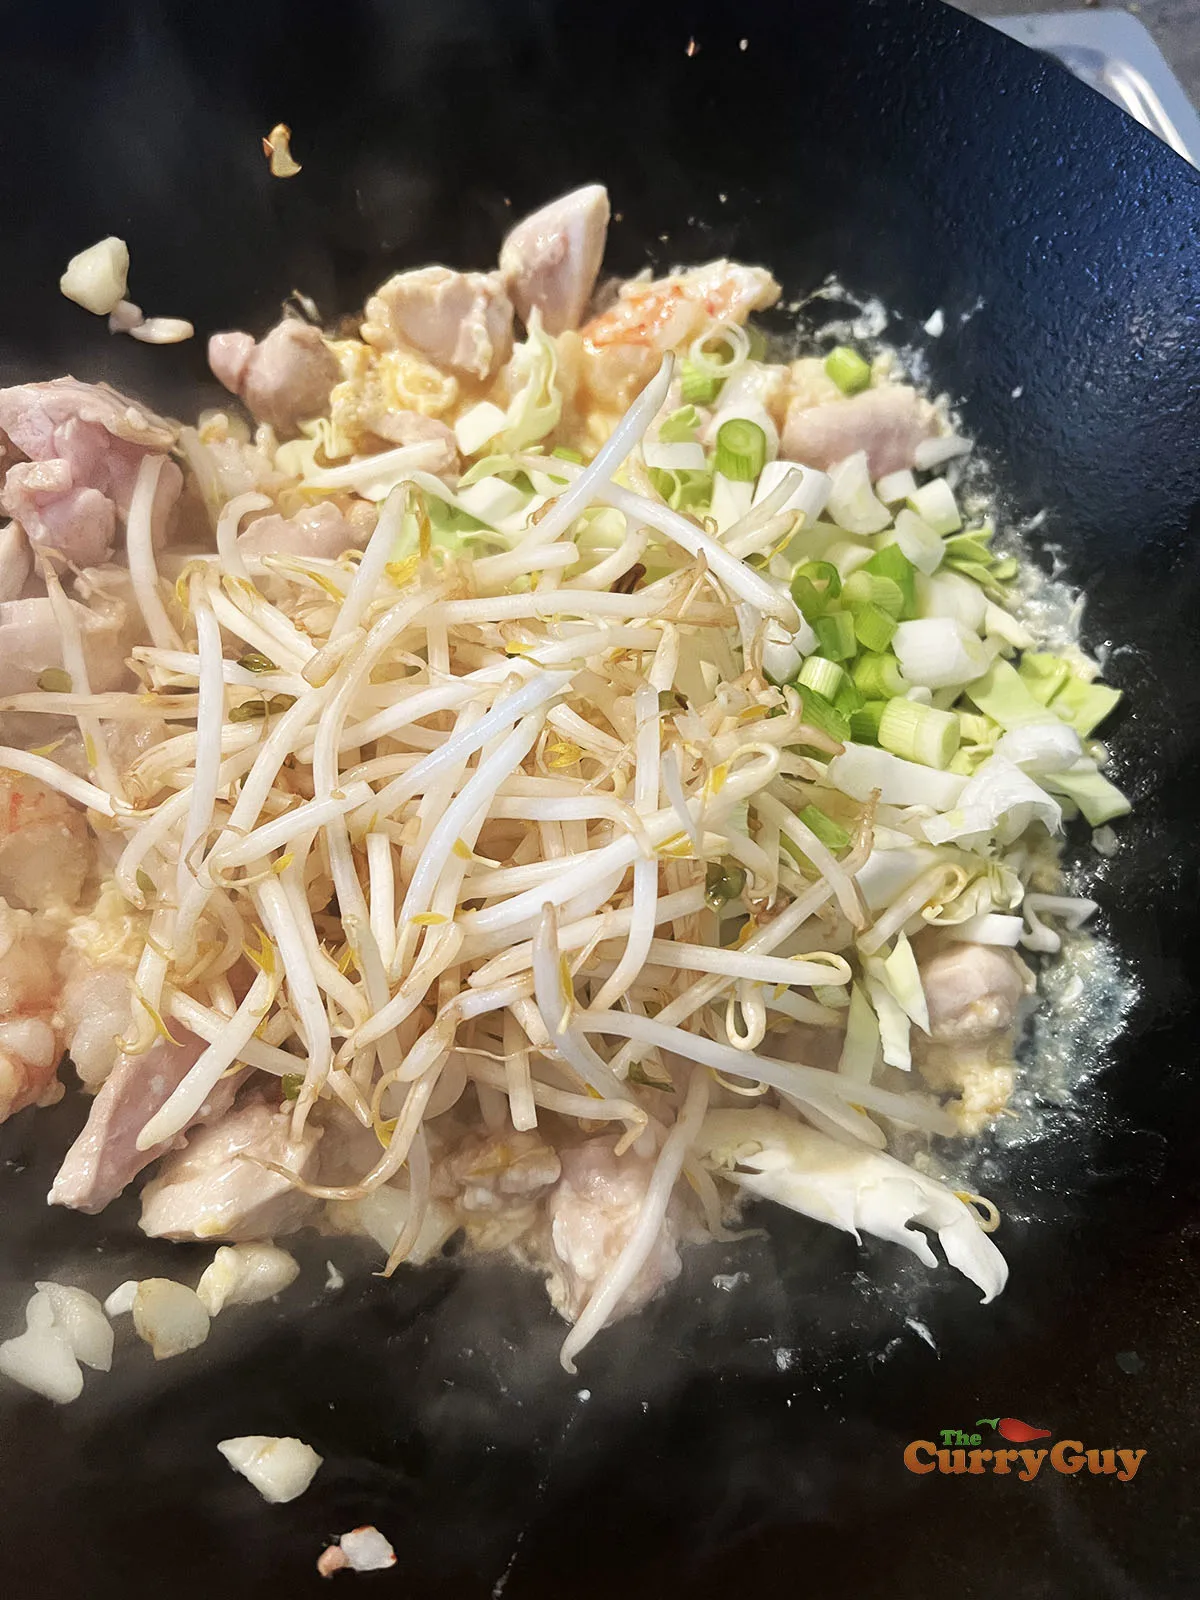 Adding veggies to the wok